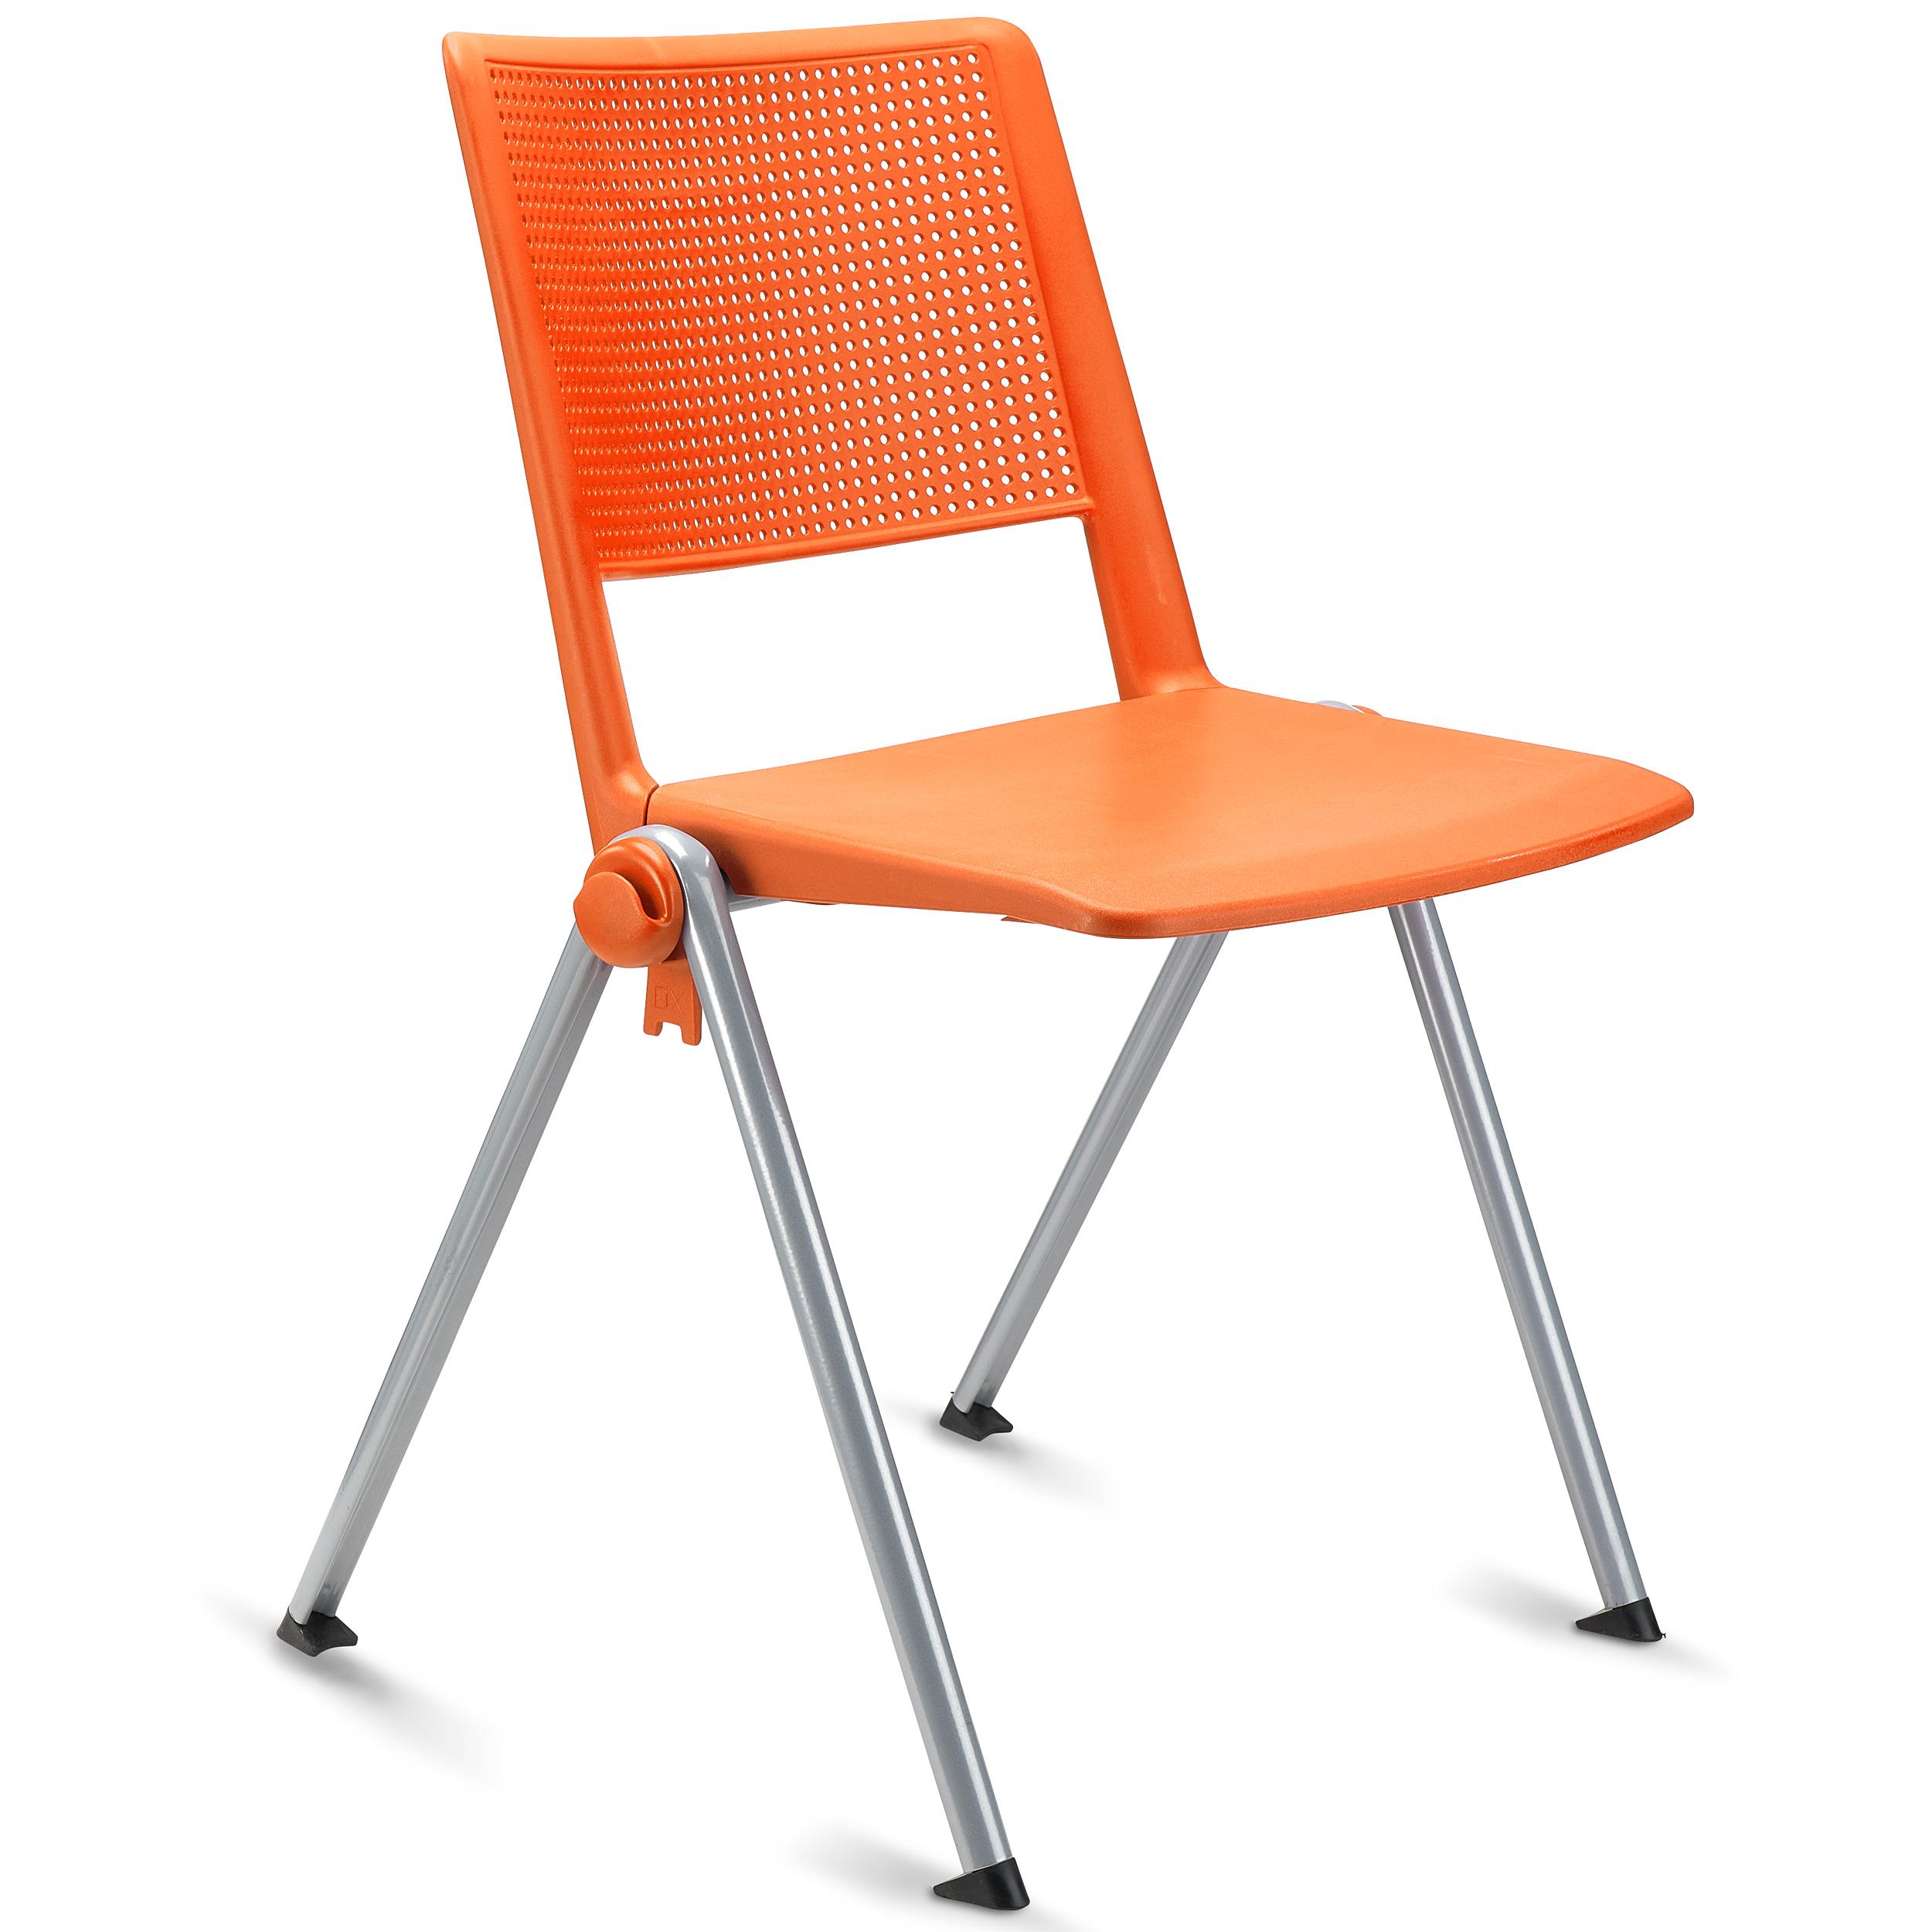 Konferenzstuhl CARINA, stapel- und reihenverbindbar, graues Stahlgestell, Farbe Orange